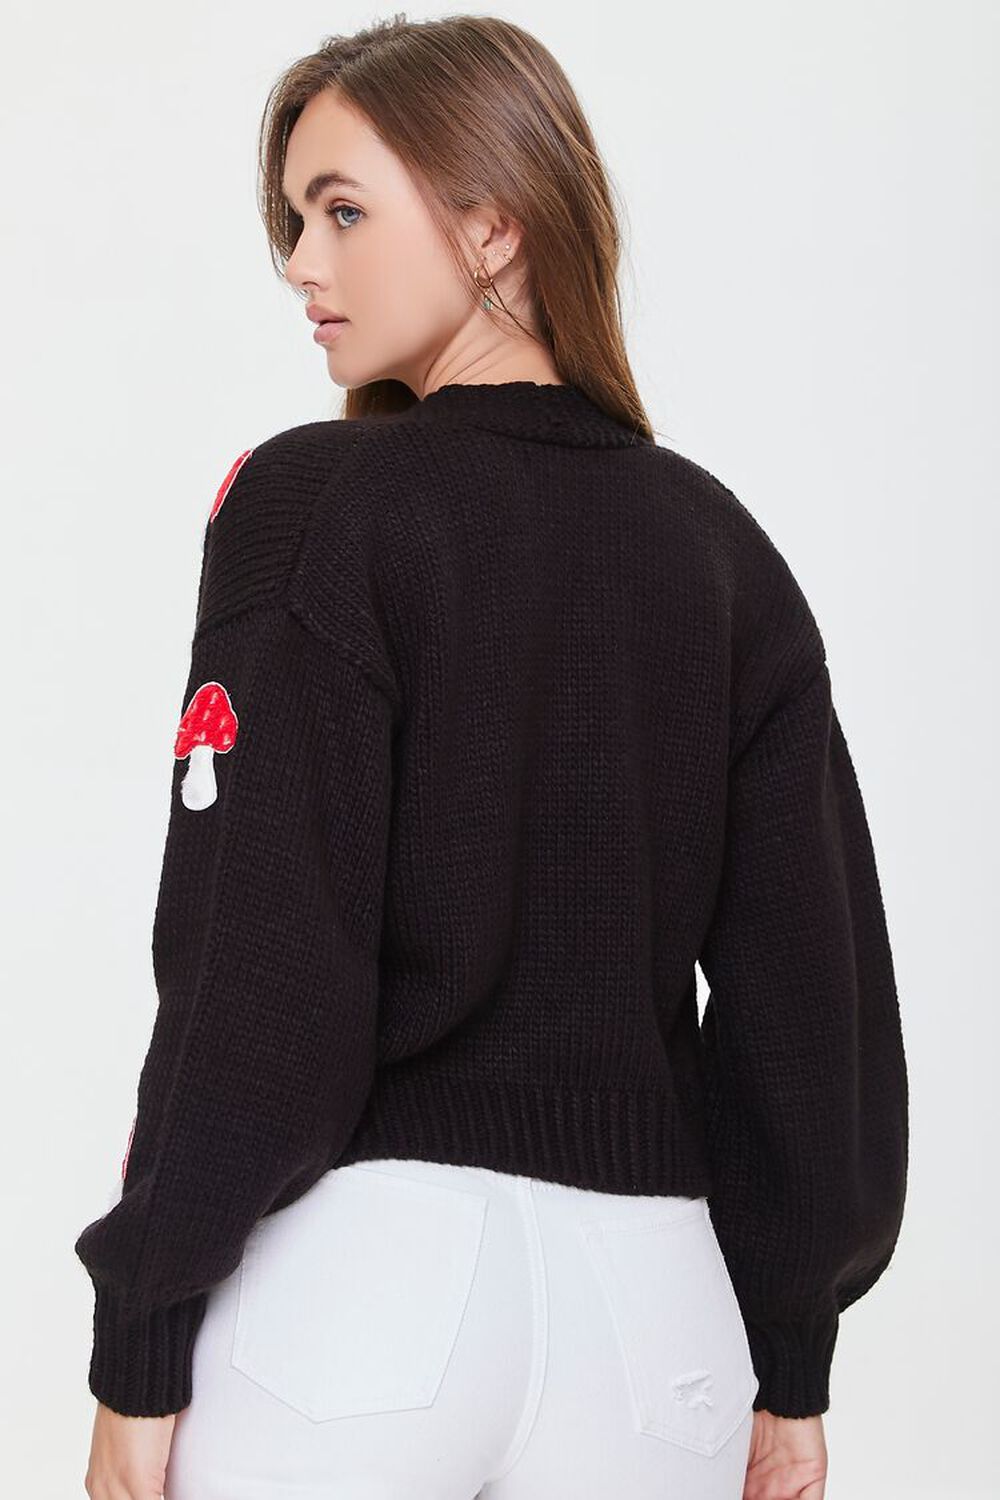 BLACK/MULTI Mushroom Cardigan Sweater, image 3